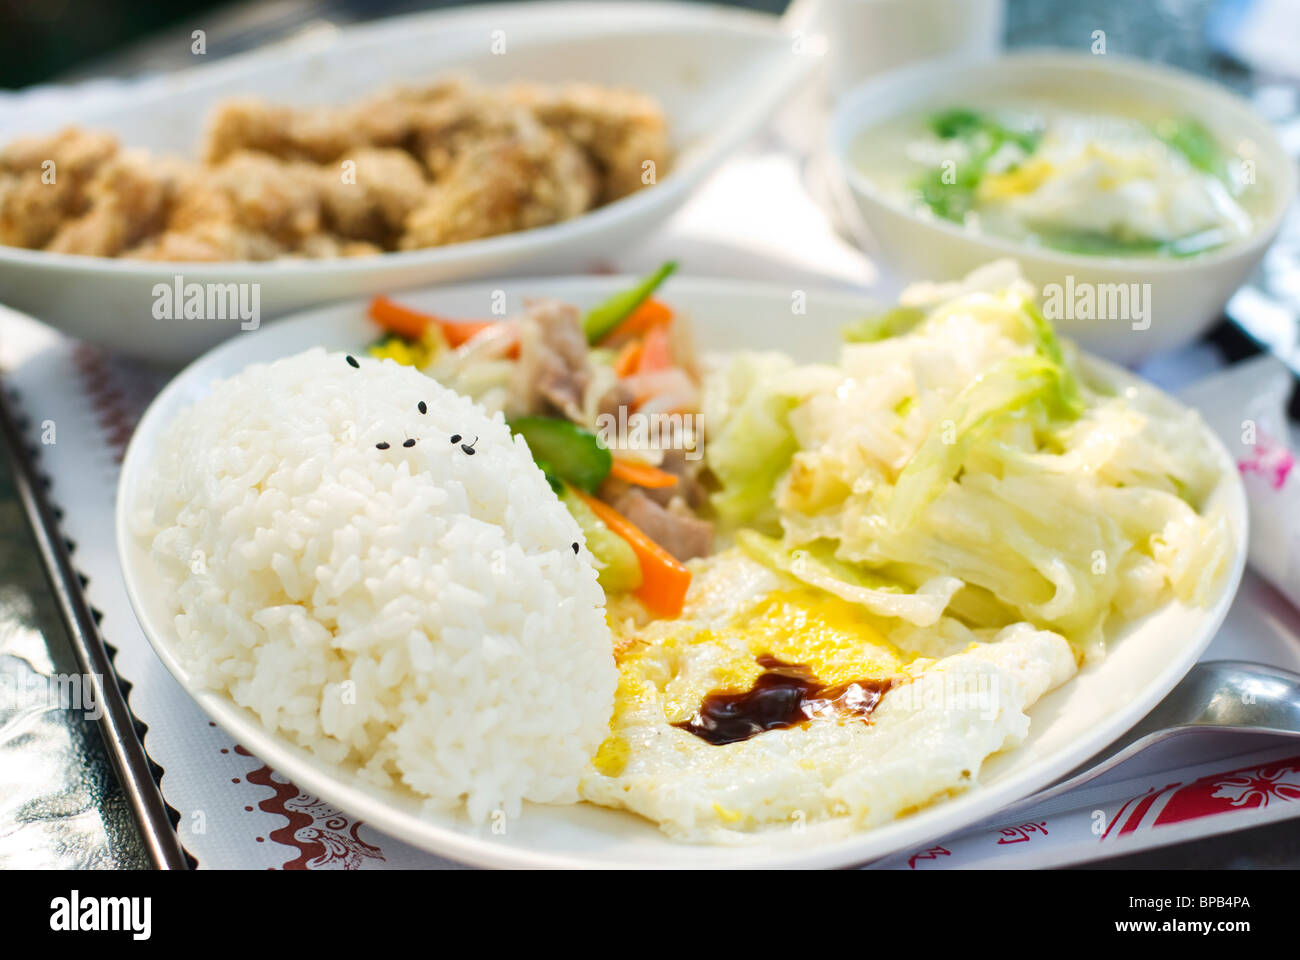 Köstliche Satz von Mittagessen. Chinesisches Essen mit Reis, Ei, Kohl Gemüse, gebratenes Huhn und Suppe auf dem Tisch. Stockfoto